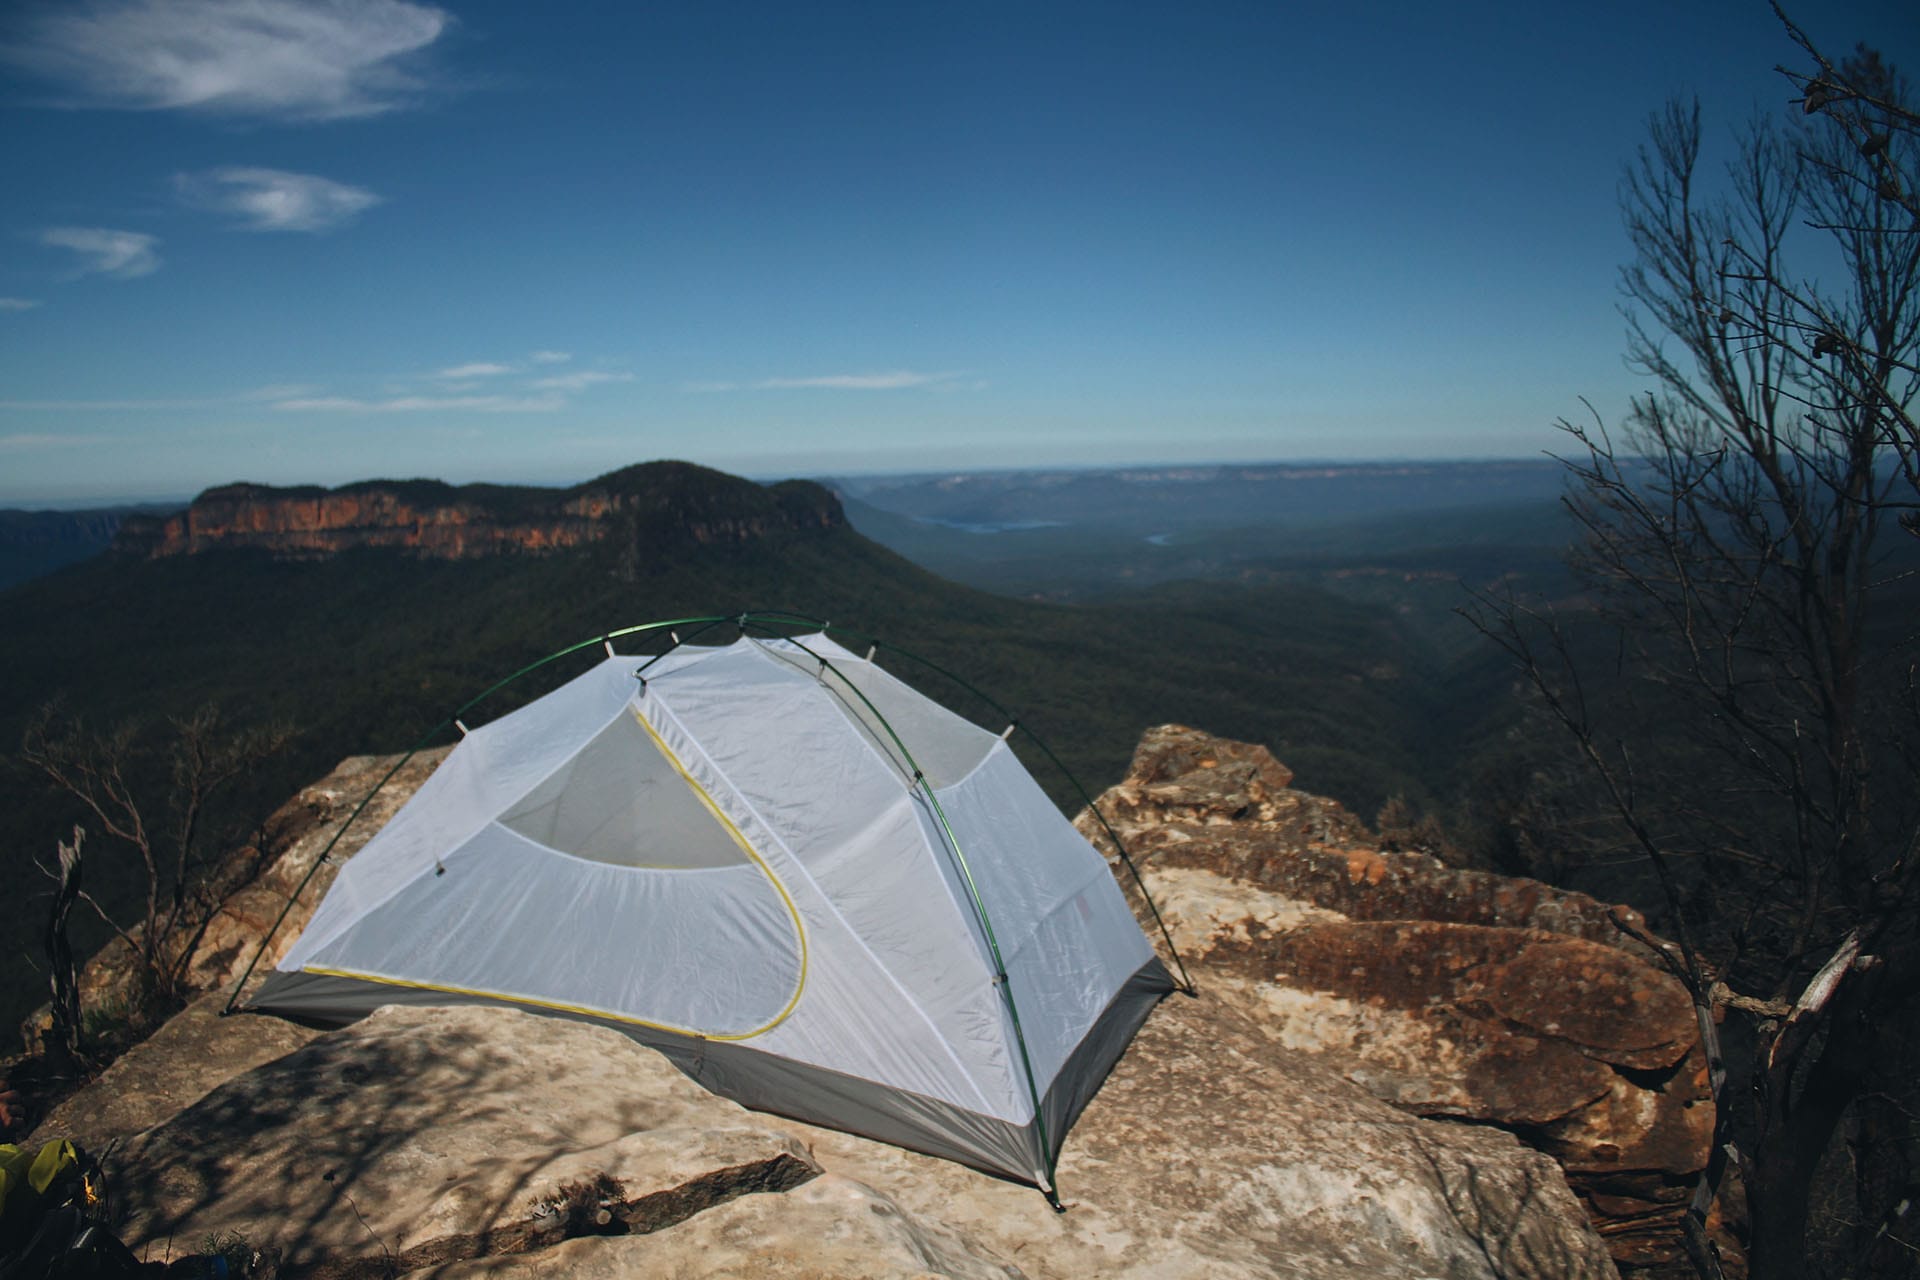 Macpac Duolight 2p Tent Review